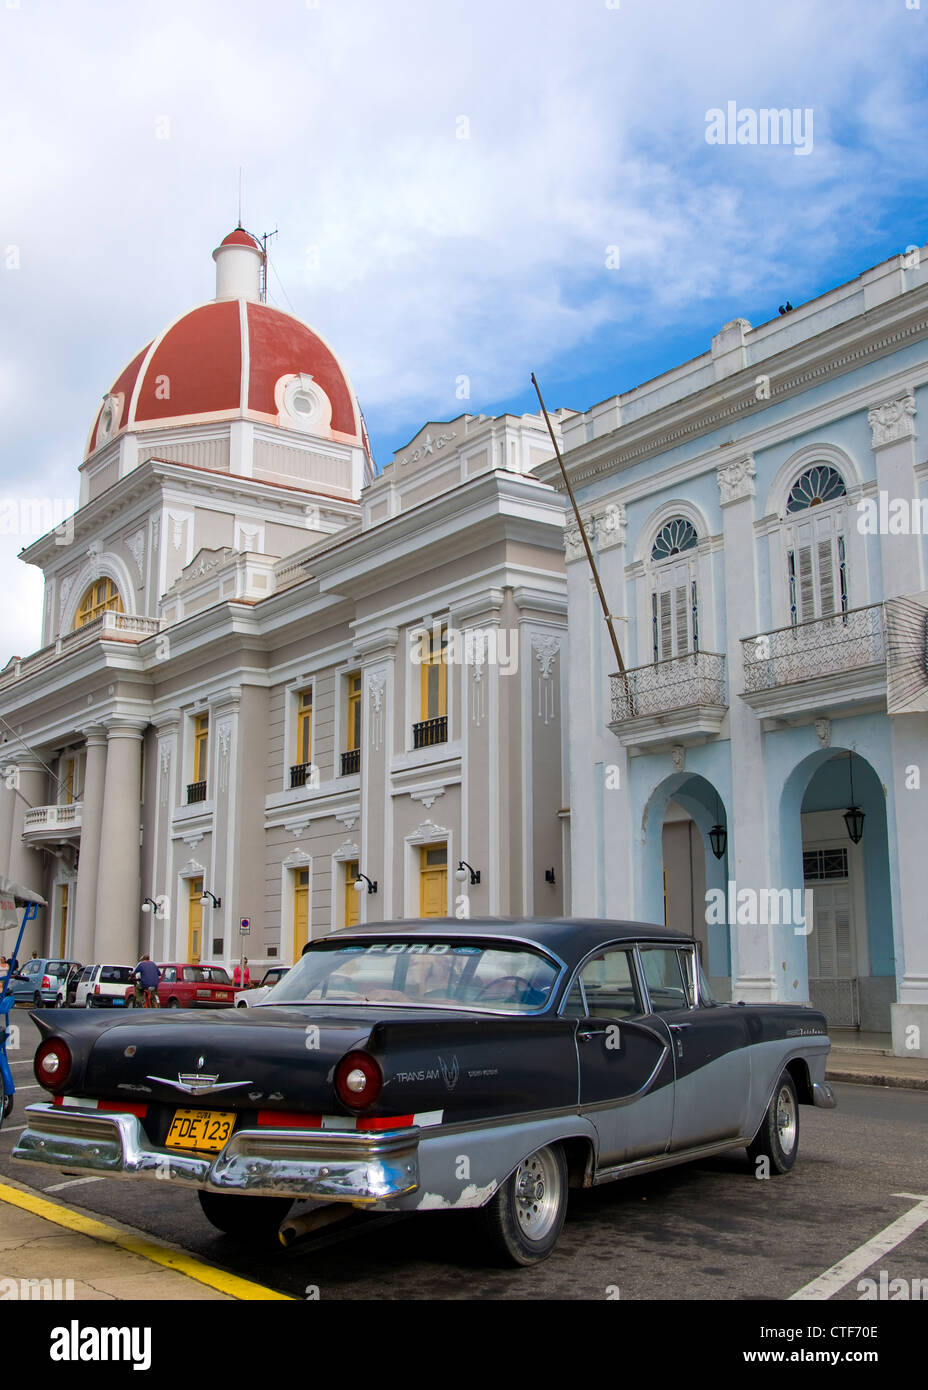 Old American Car, Cienfuegos, Cuba Stock Photo